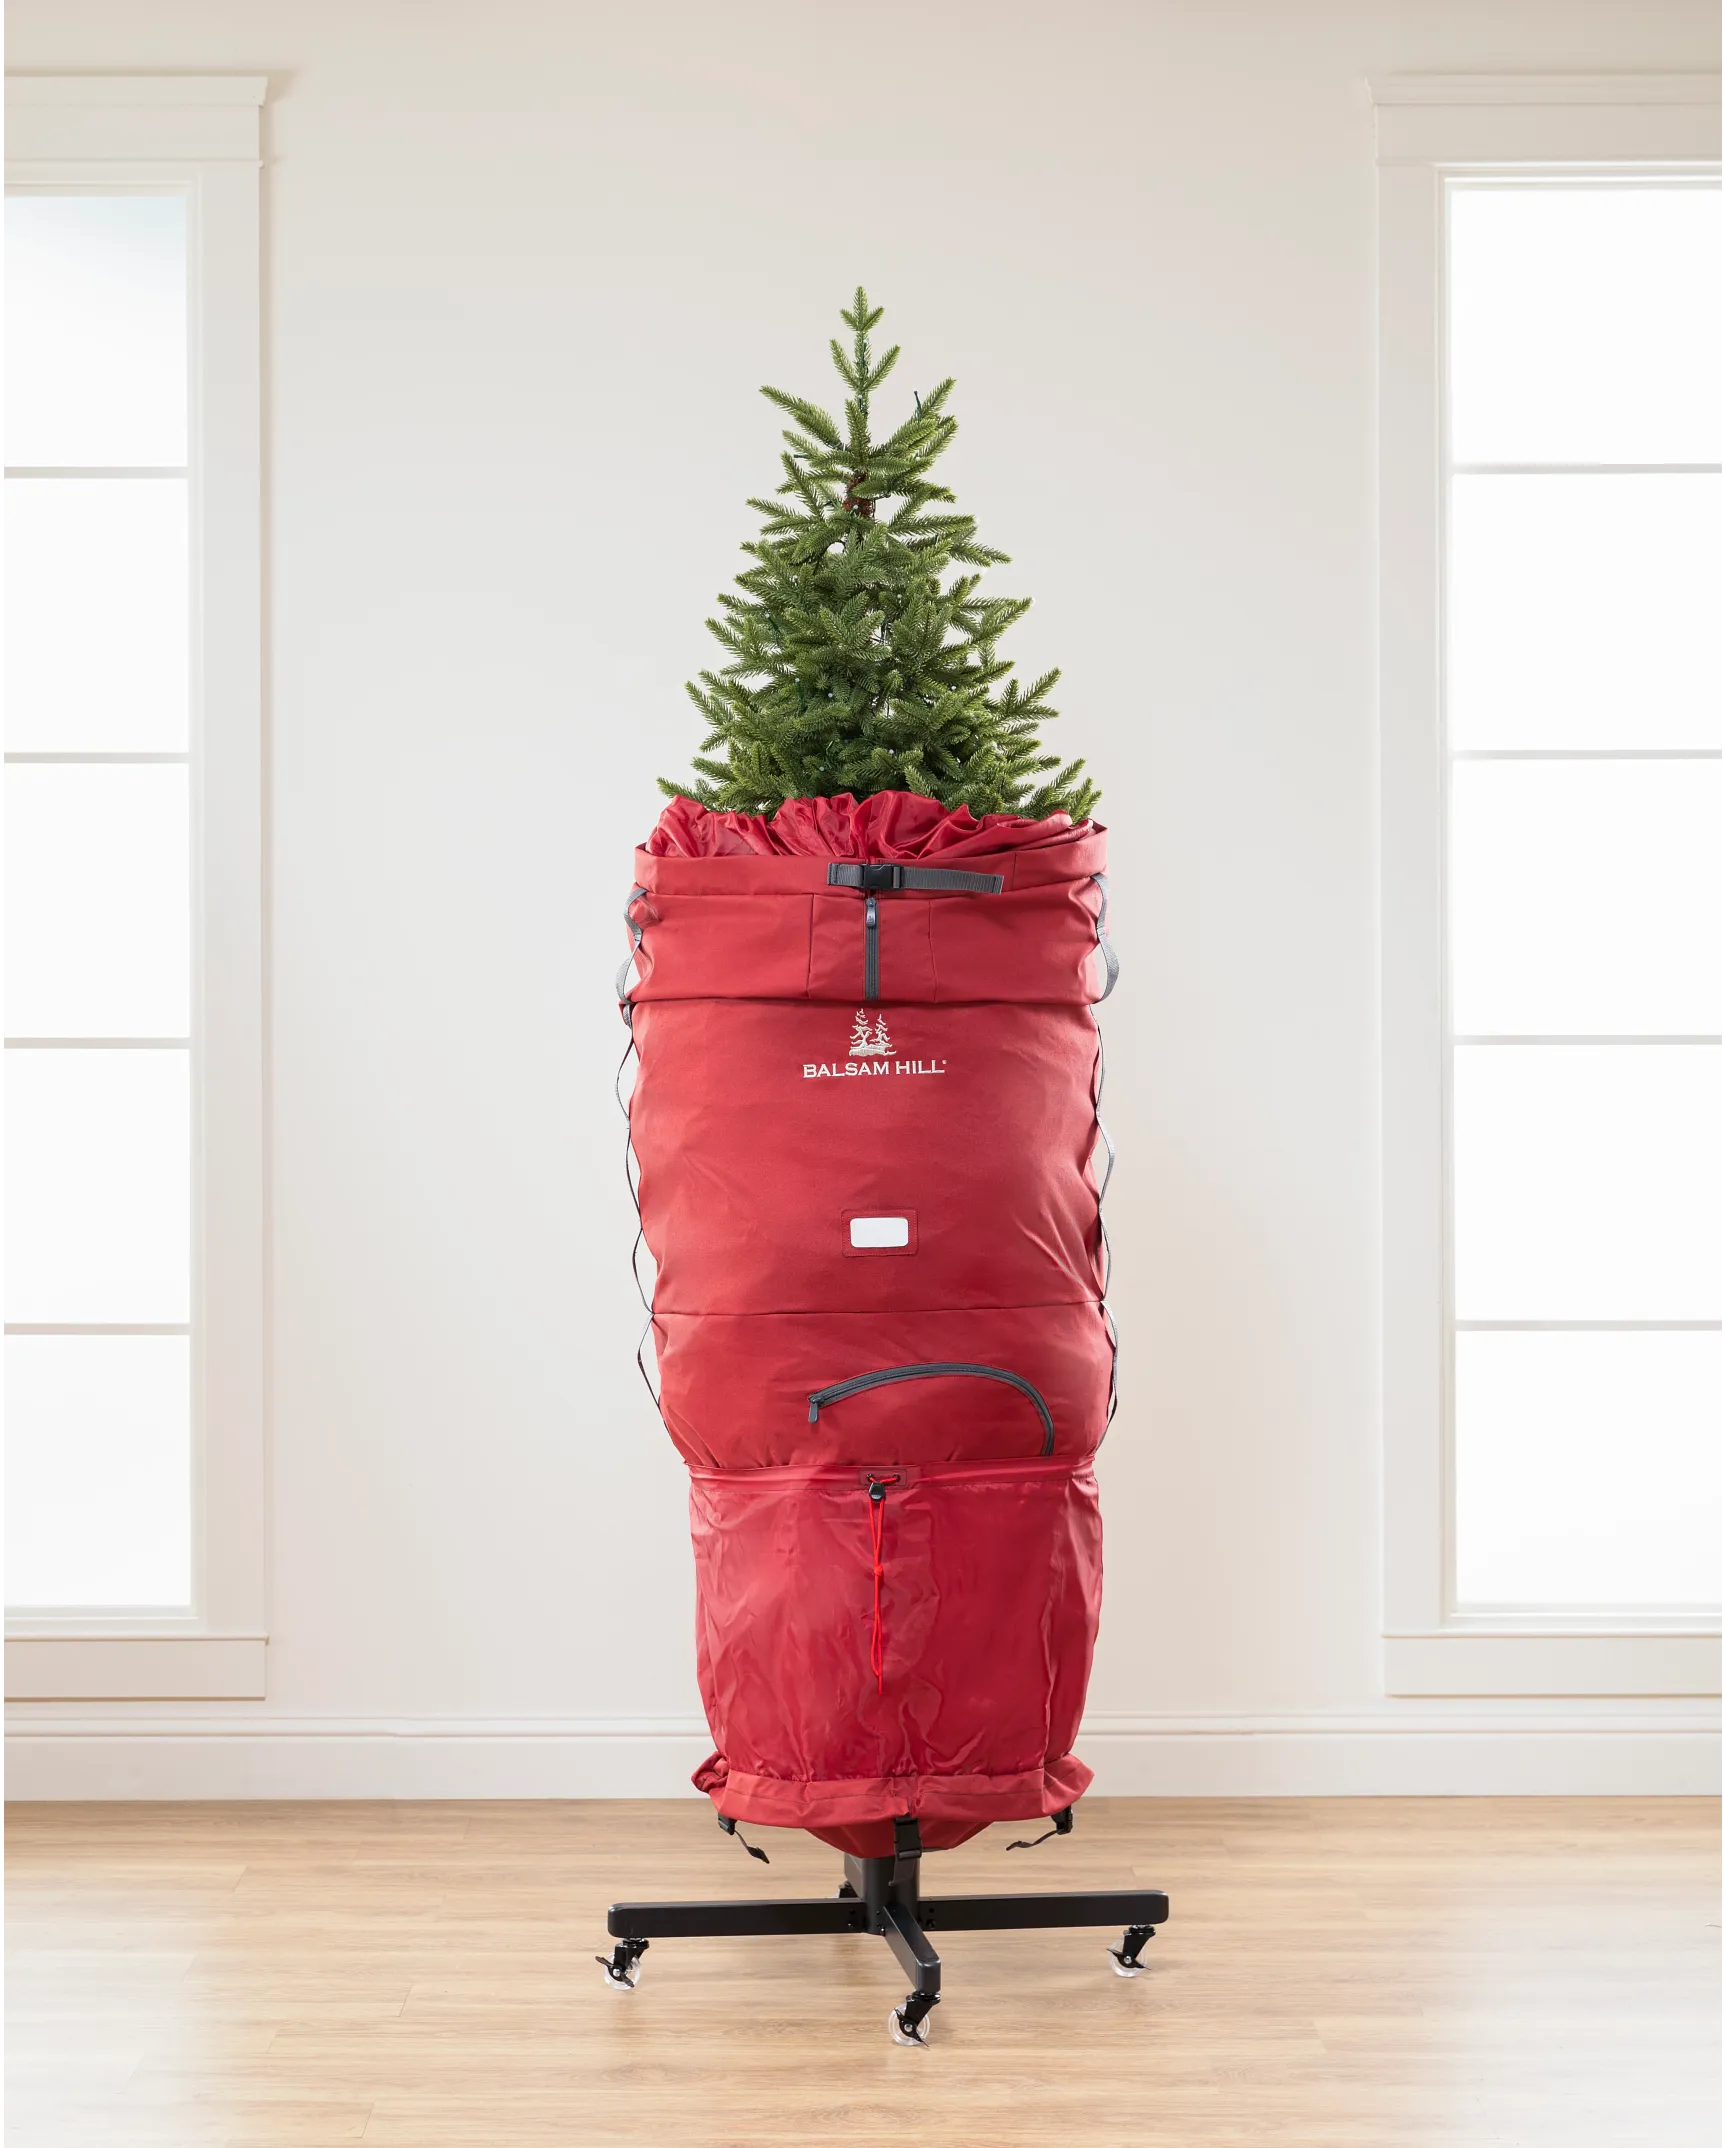 Sac de rangement extra large pour sapin de Noël - Pour arbres